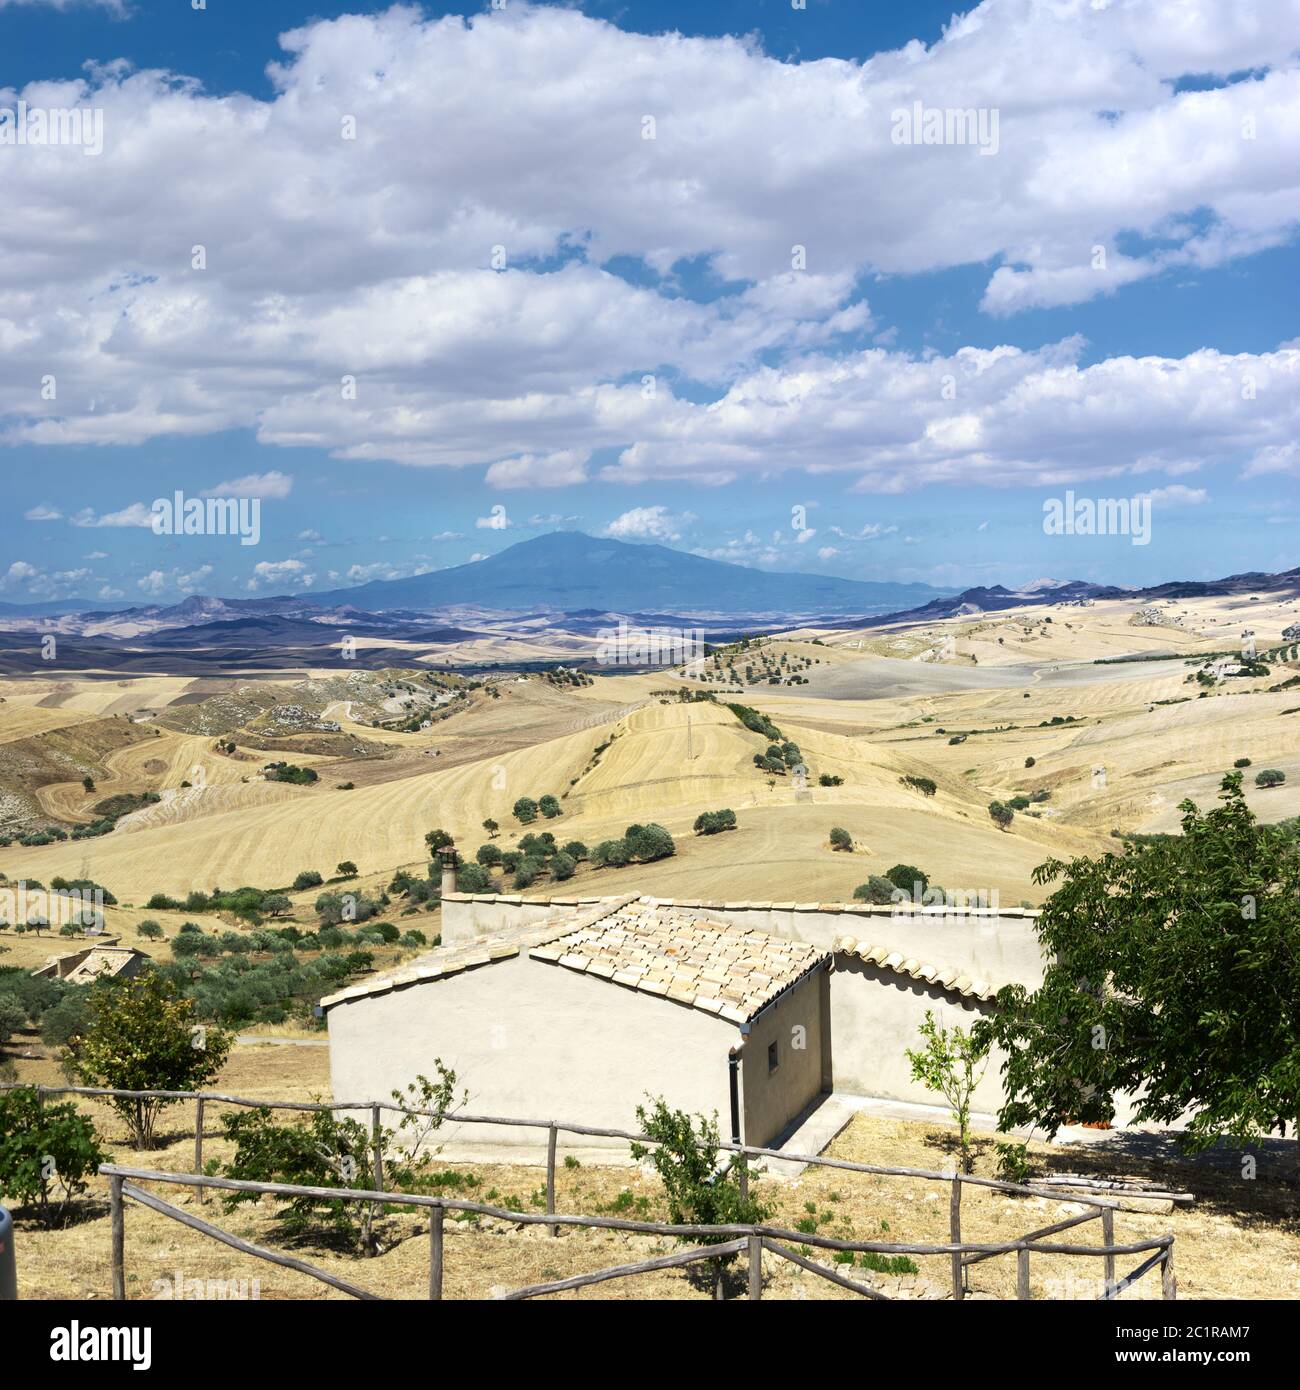 Paesaggio Sicilia estate di campagna intorno all'Etna con casa rurale, campo di grano e ulivi sotto il paesaggio nuvoloso Foto Stock